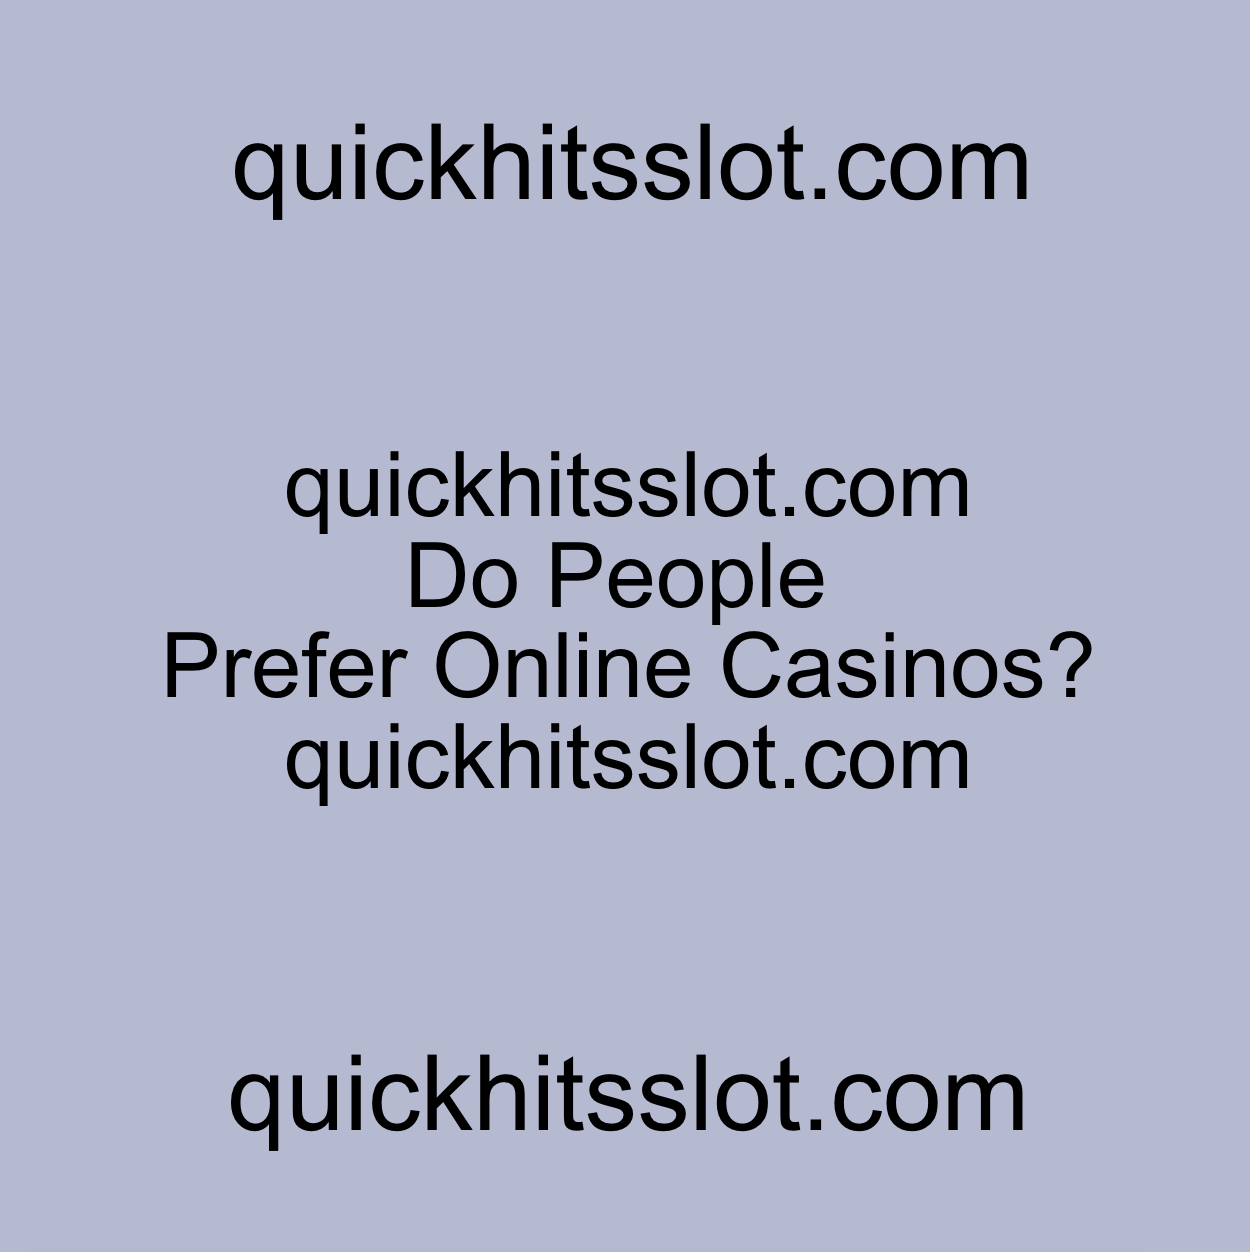 Do People Prefer Online Casinos? quickhitsslot.com